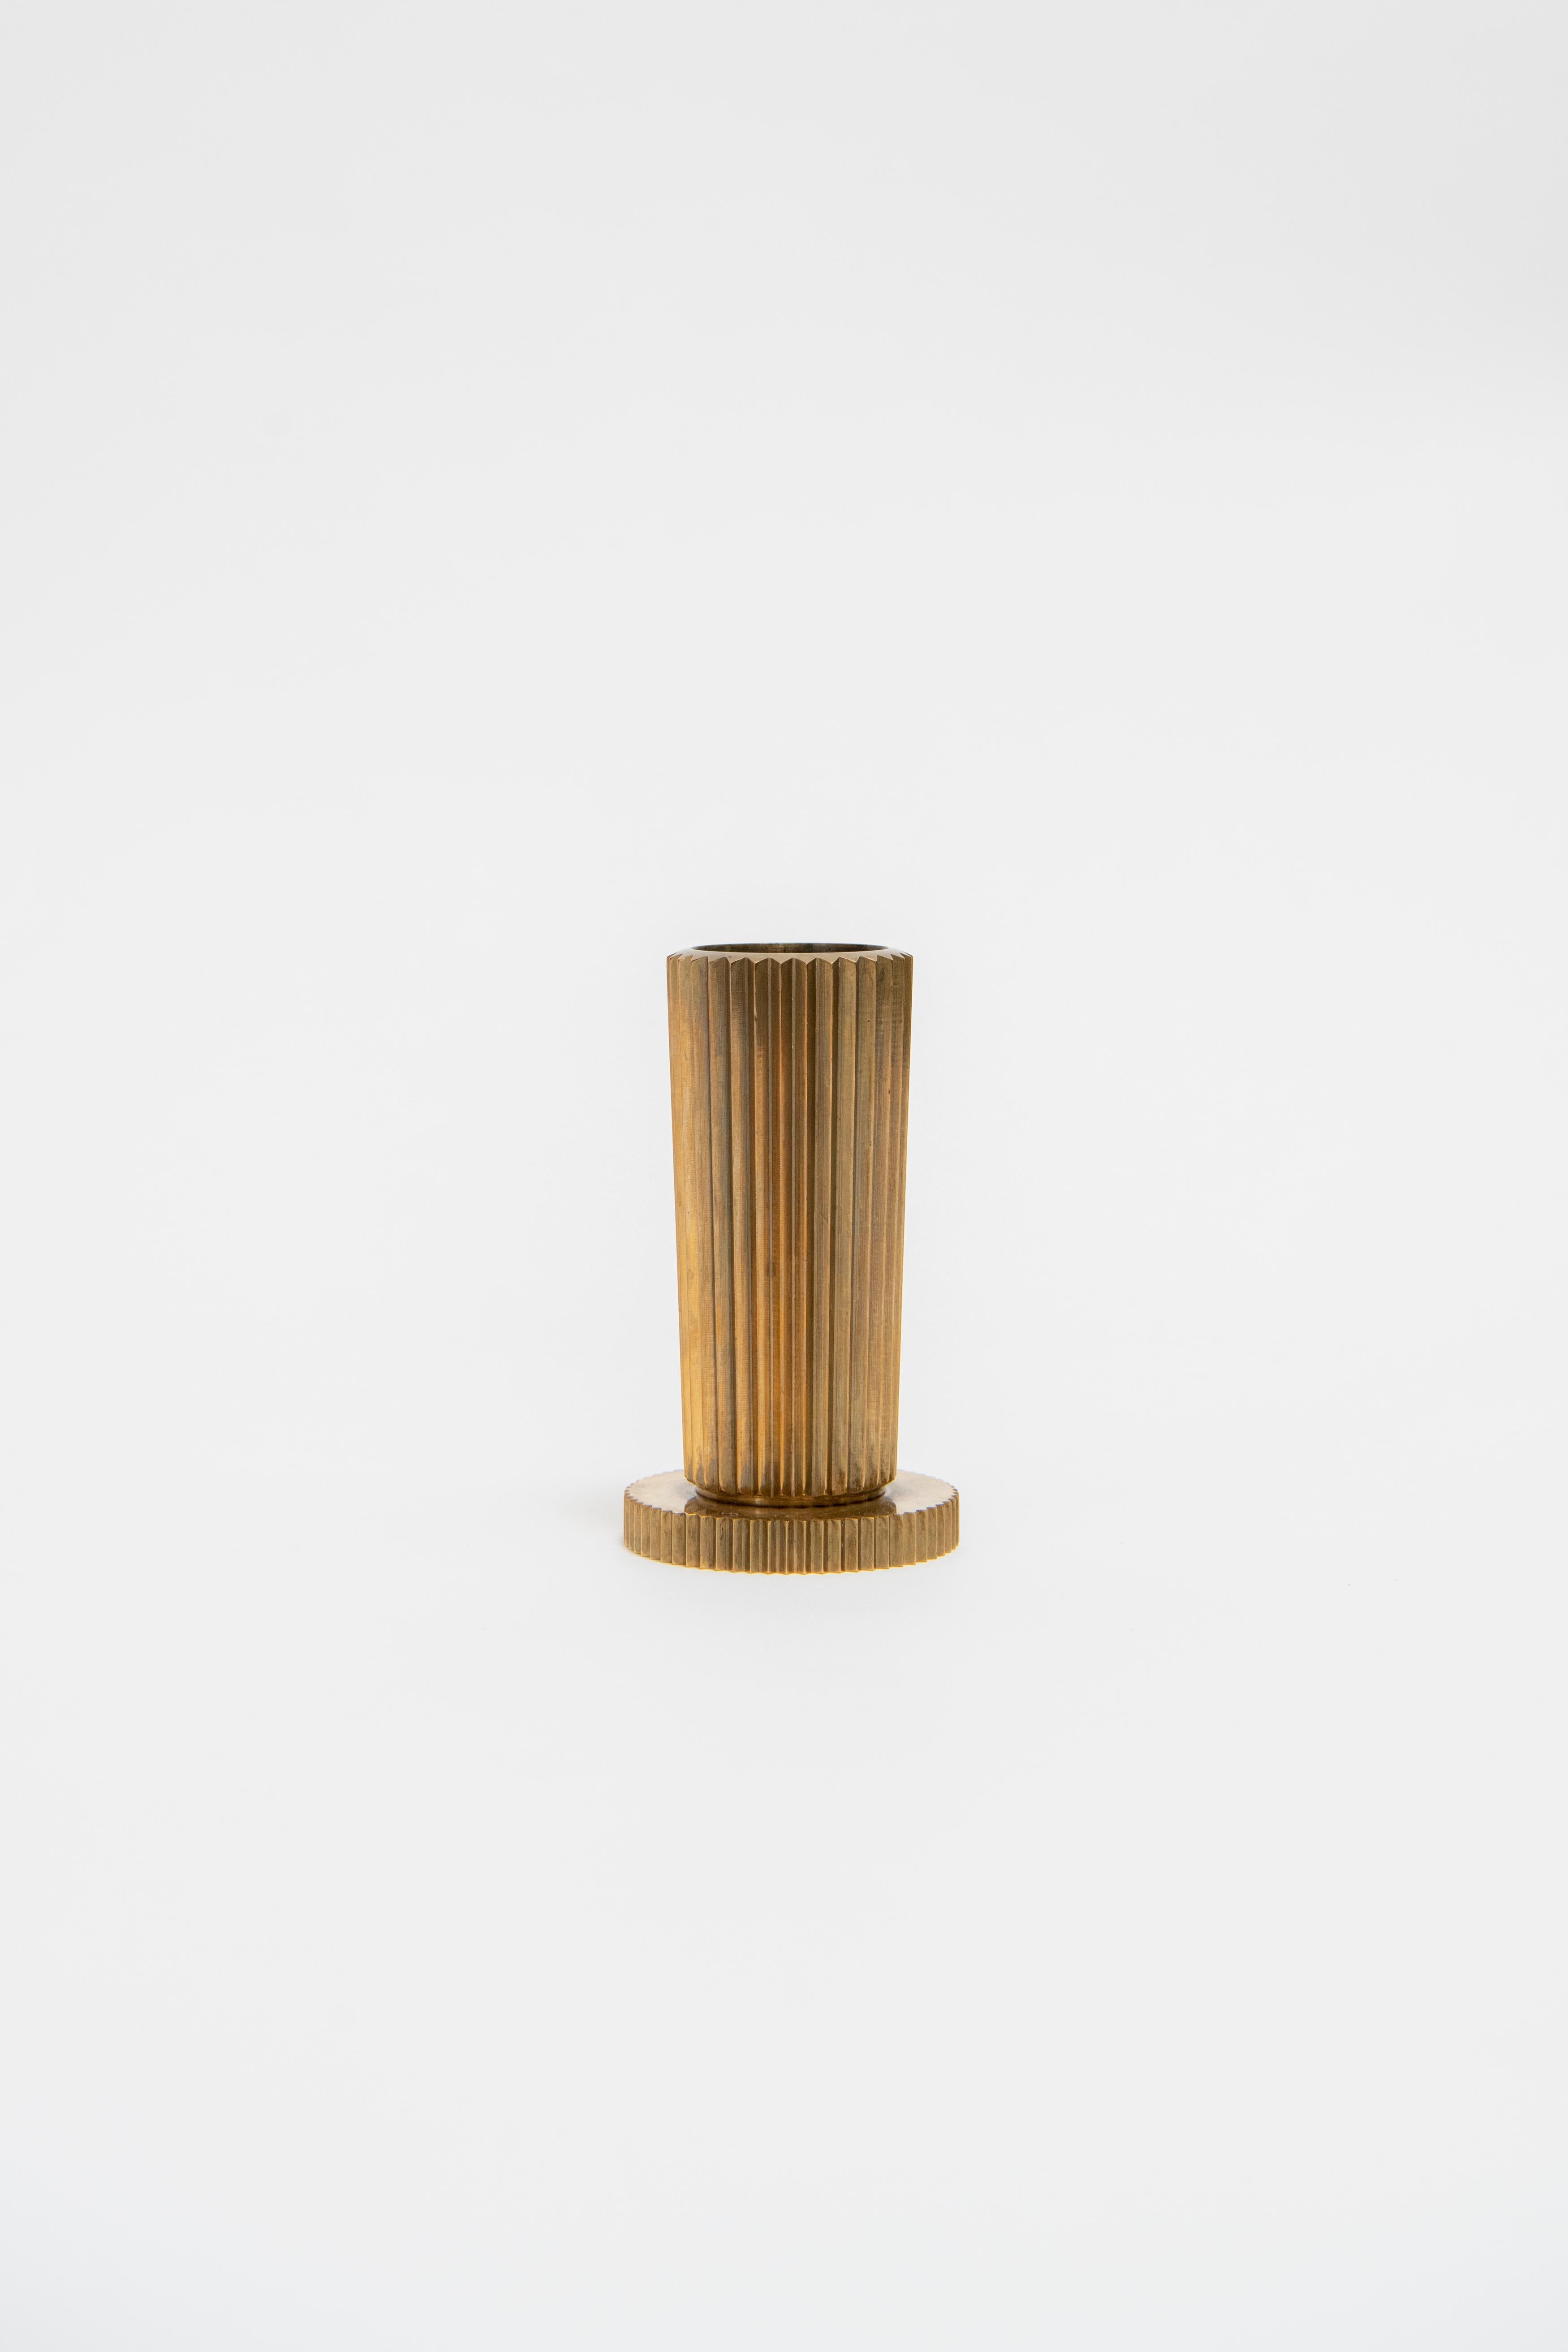 Machine Age Tinos Denmark, Solid Bronze Vase, c. 1940